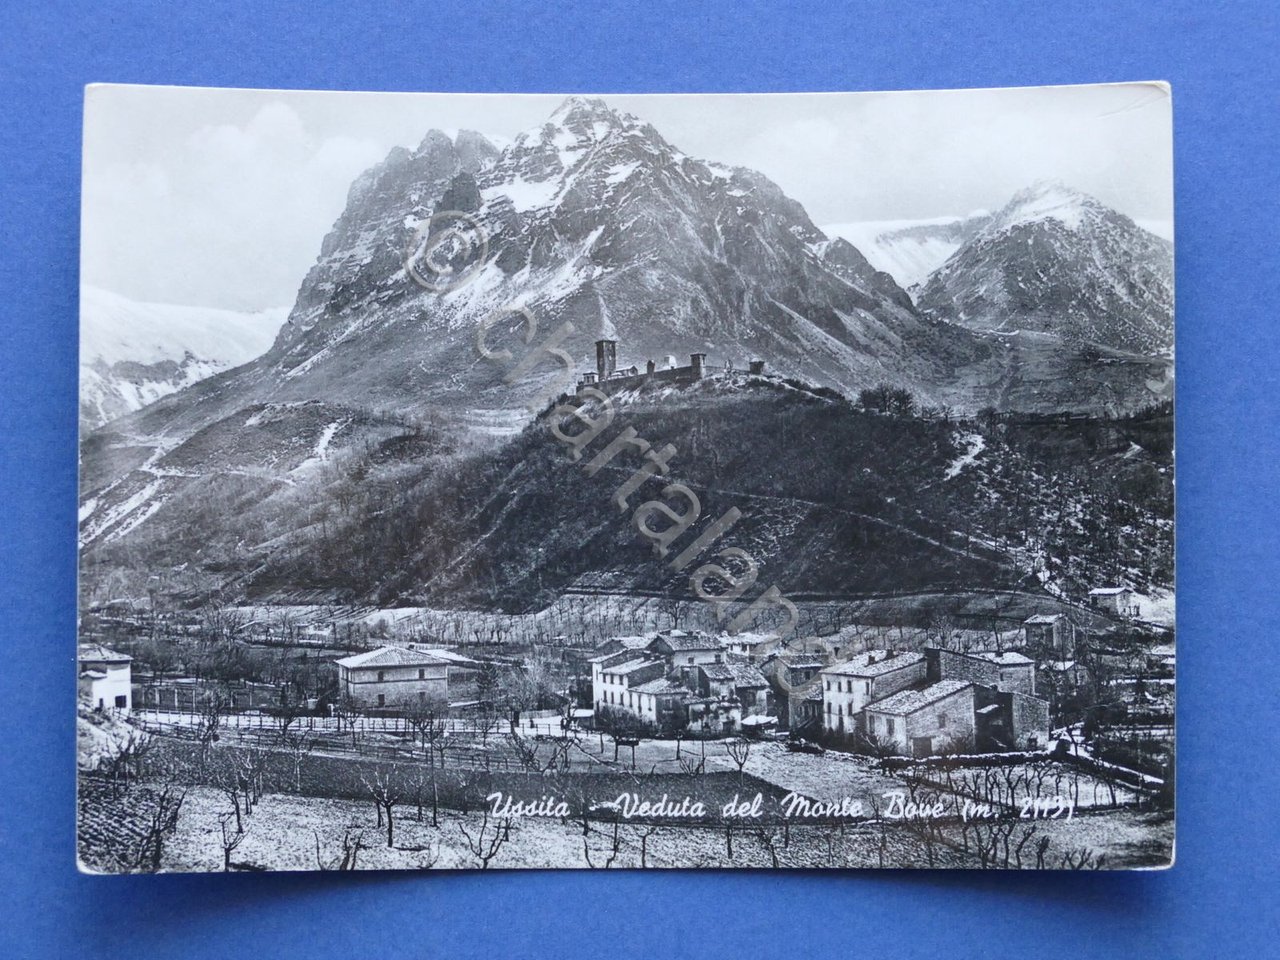 Cartolina Ussita - Veduta del Monte Bove - 1955.